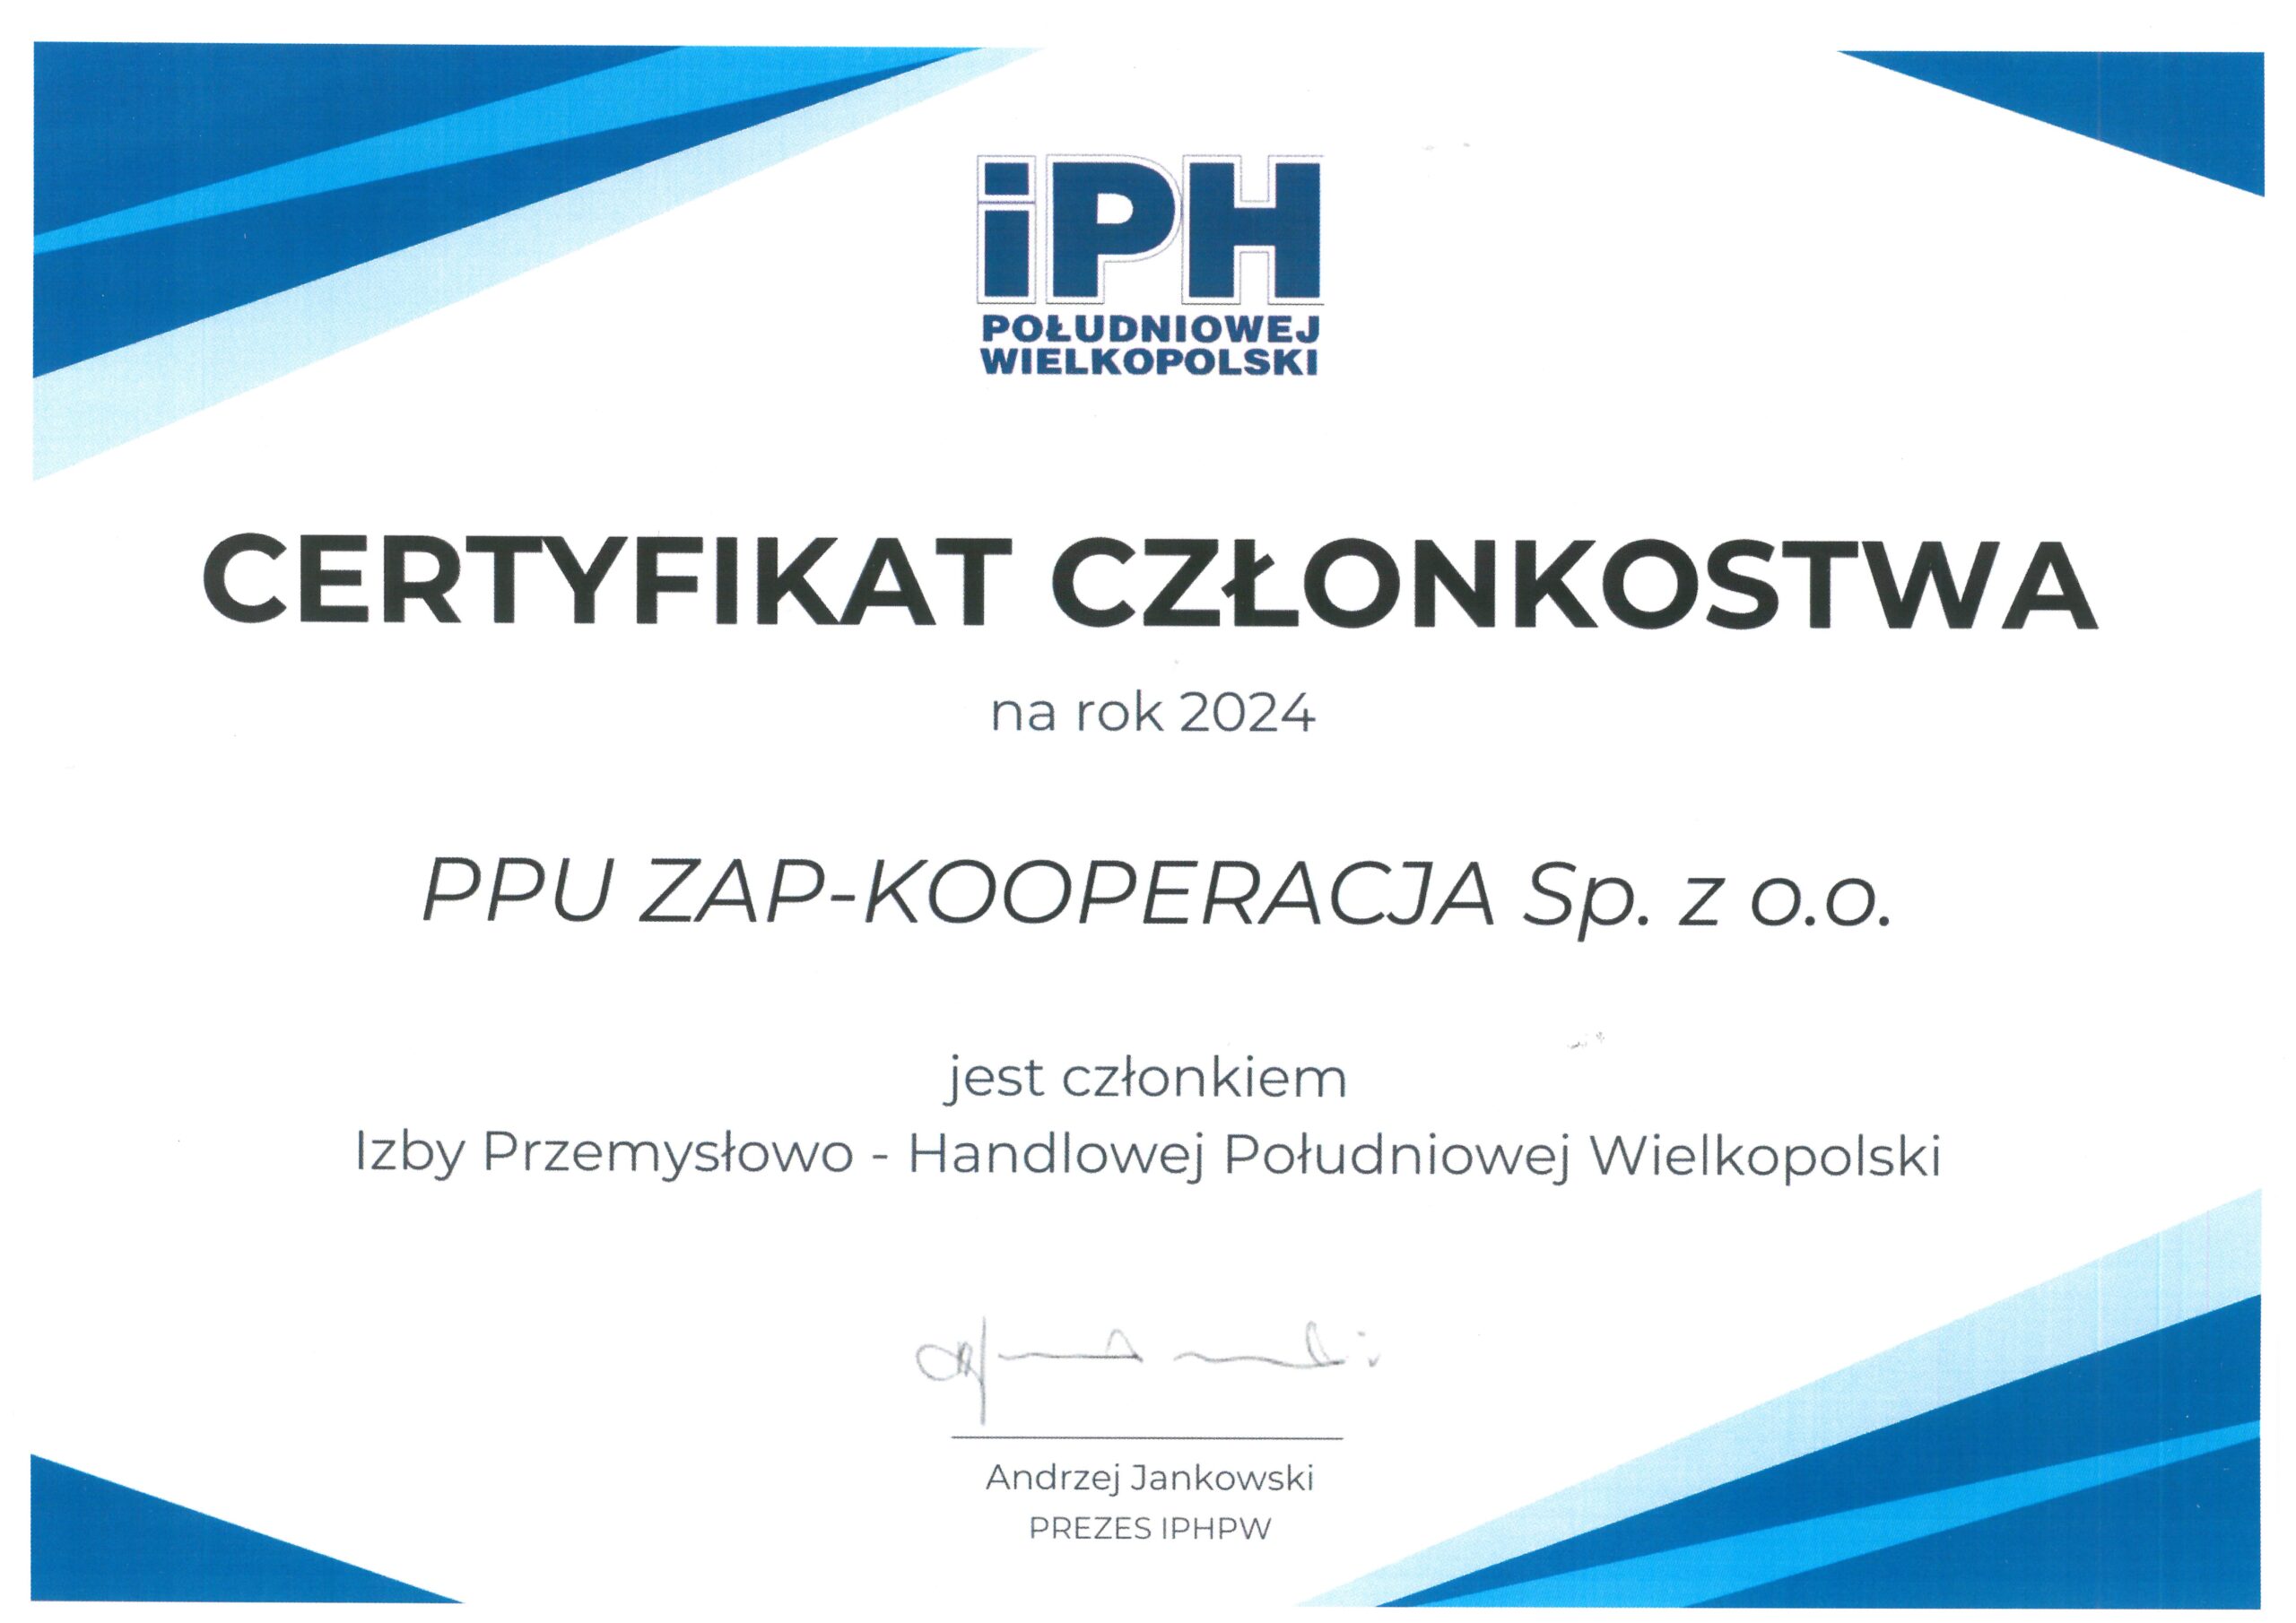 IPH PL